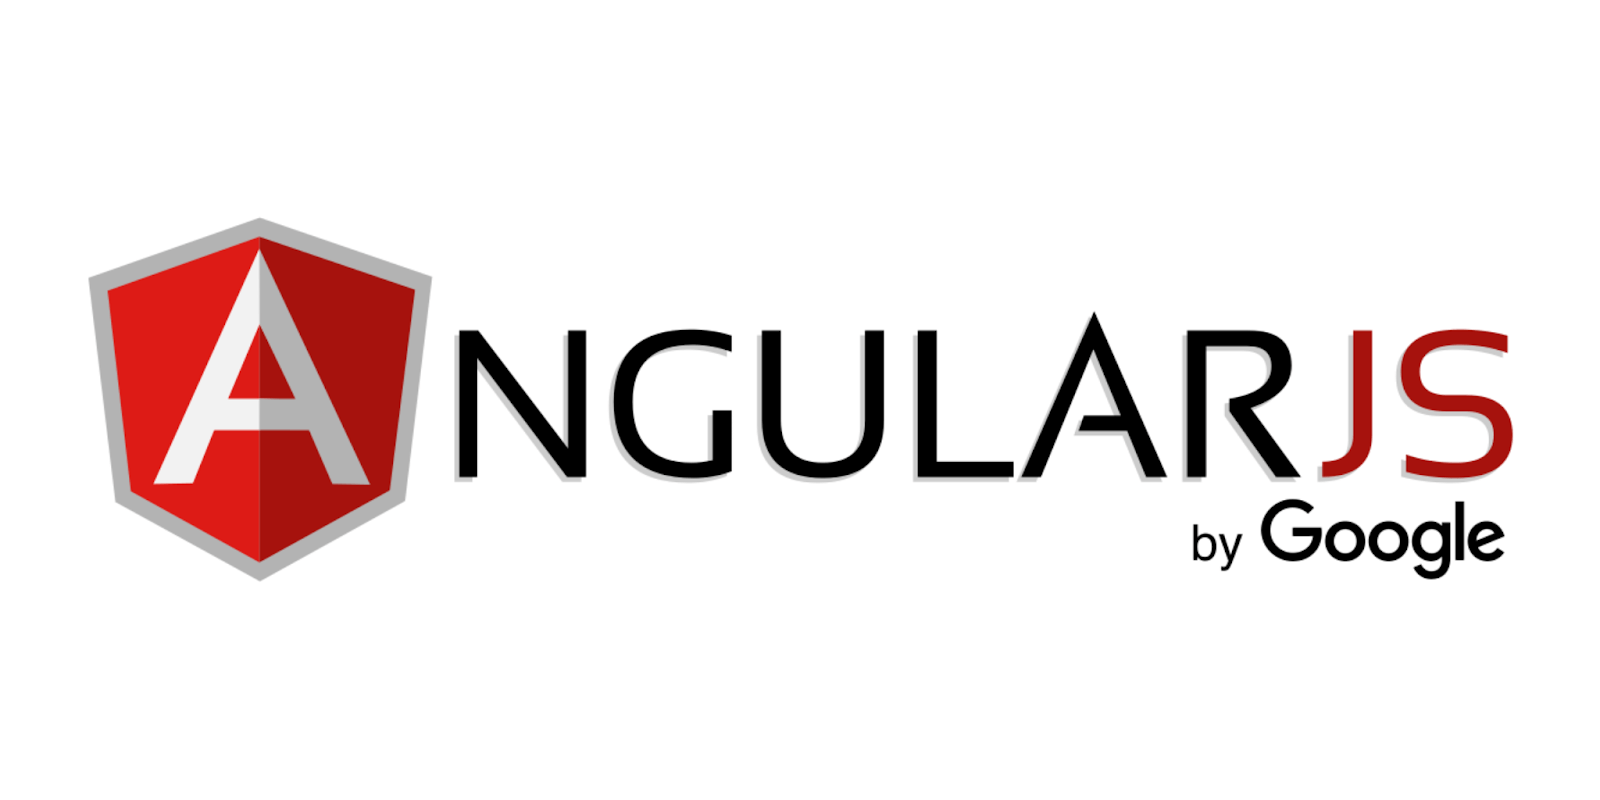 AngularJs